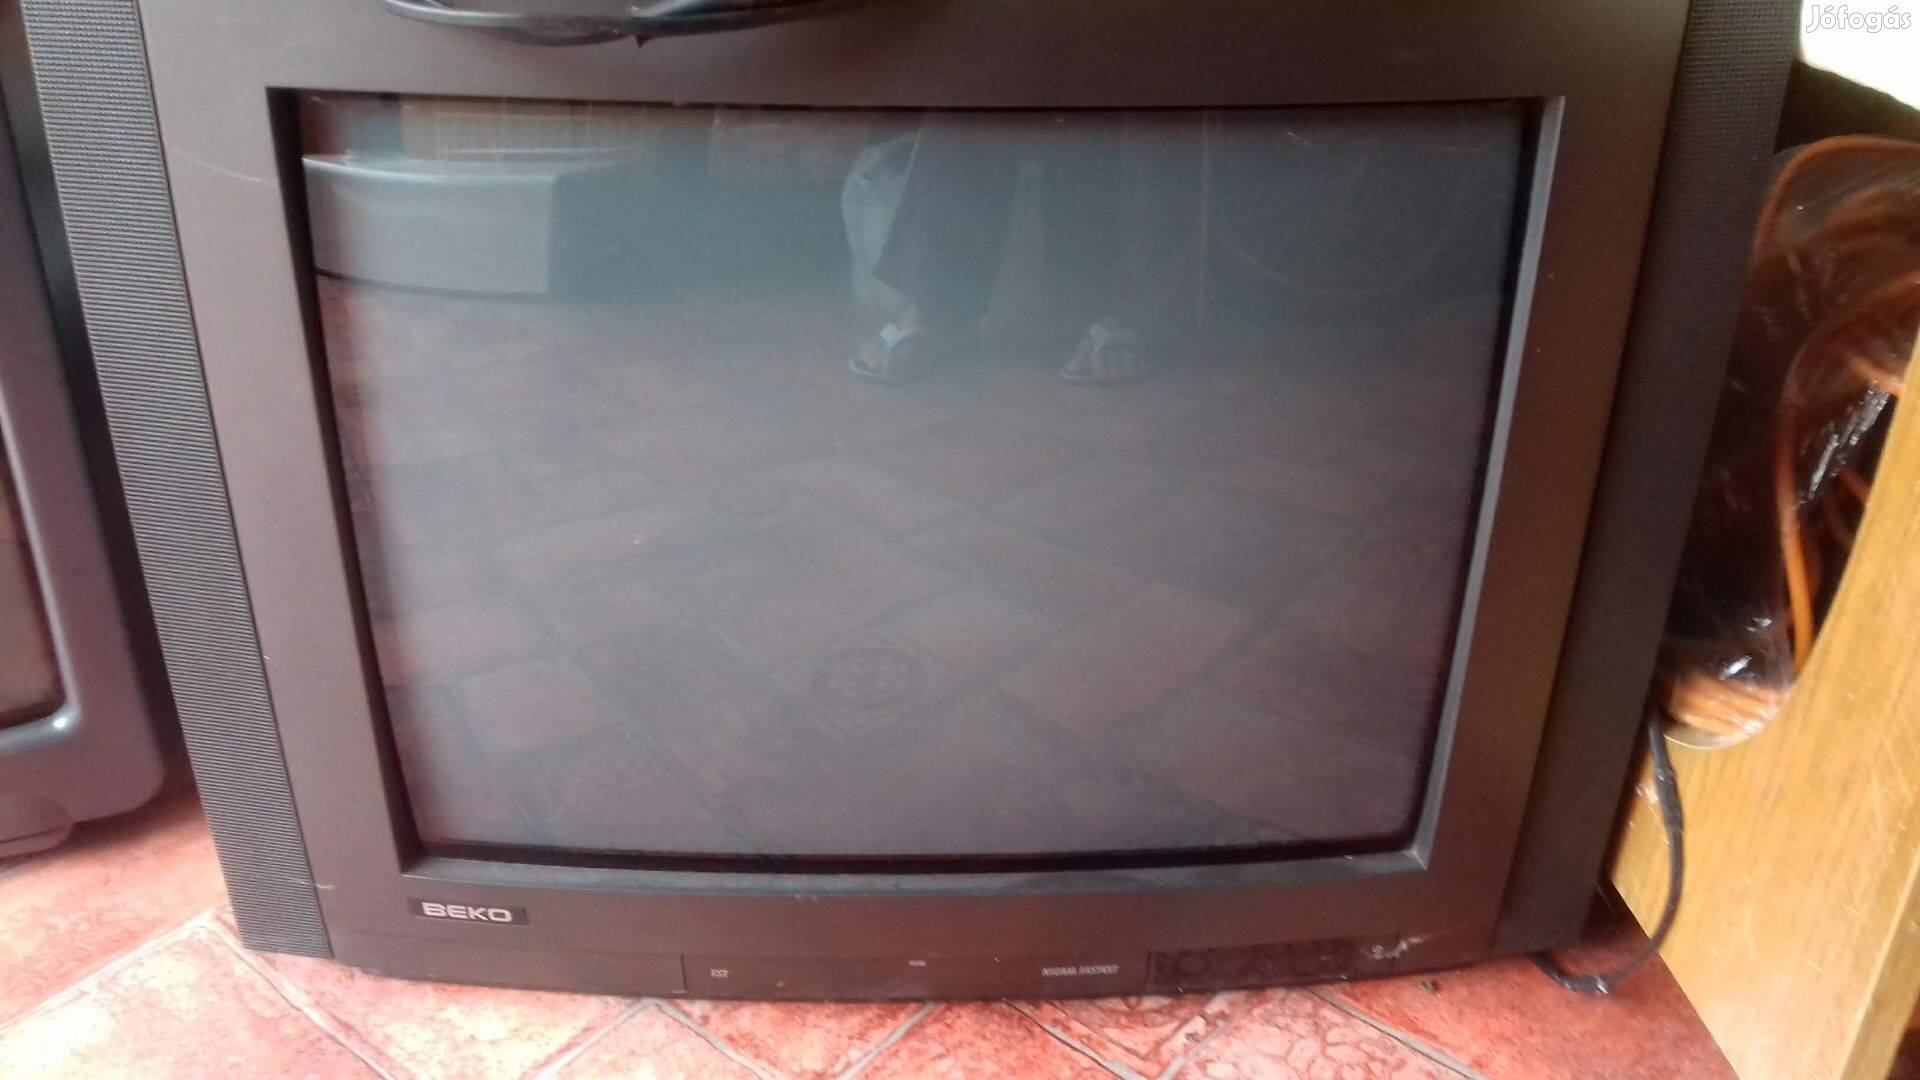 Eladó retro különböző TV 55cm átmérő Beko, Reco, Saba